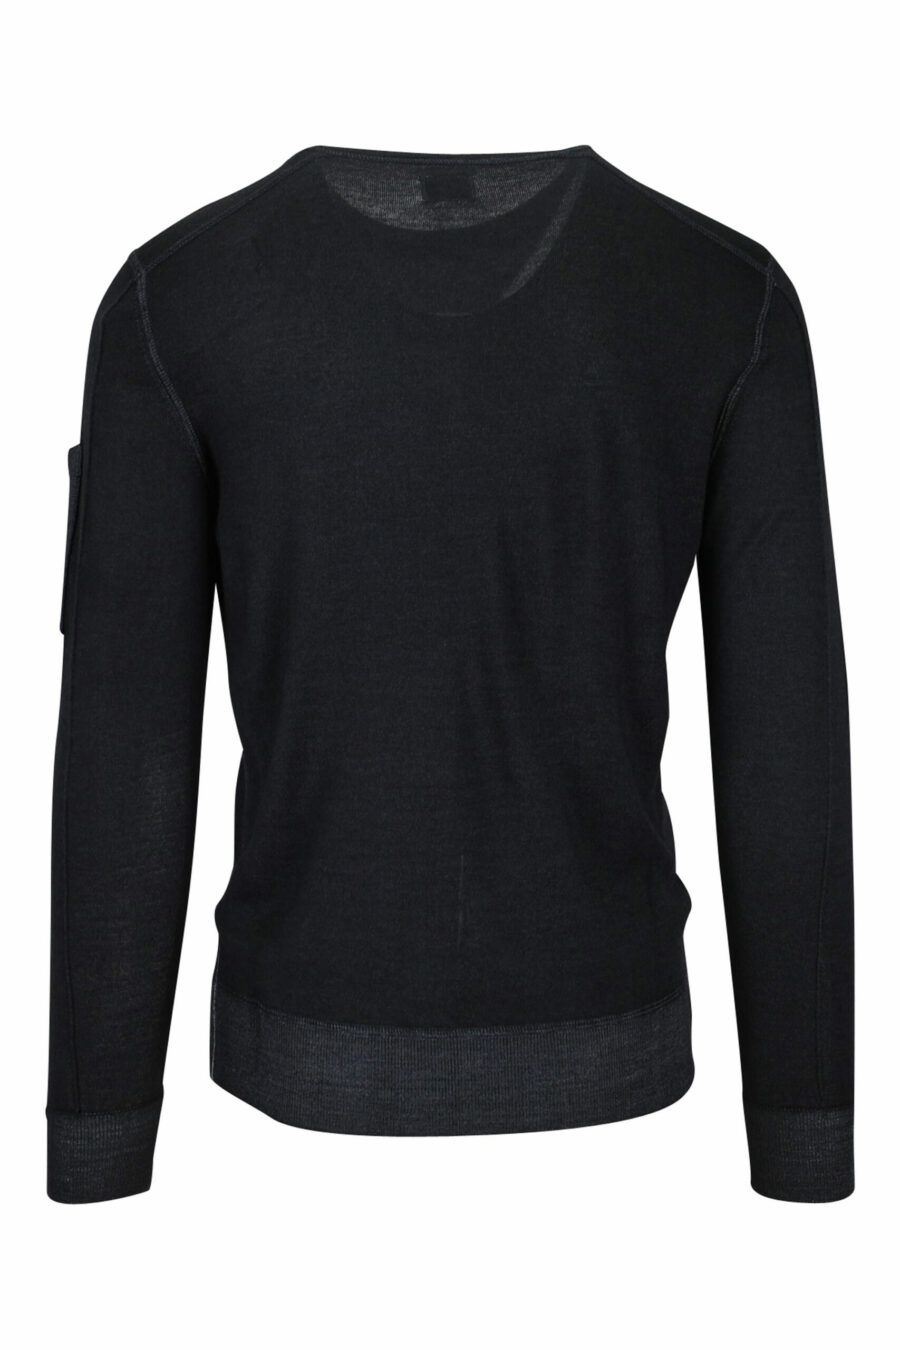 Schwarzes Sweatshirt mit seitlichem Linsenlogo - 7620943583458 2 skaliert